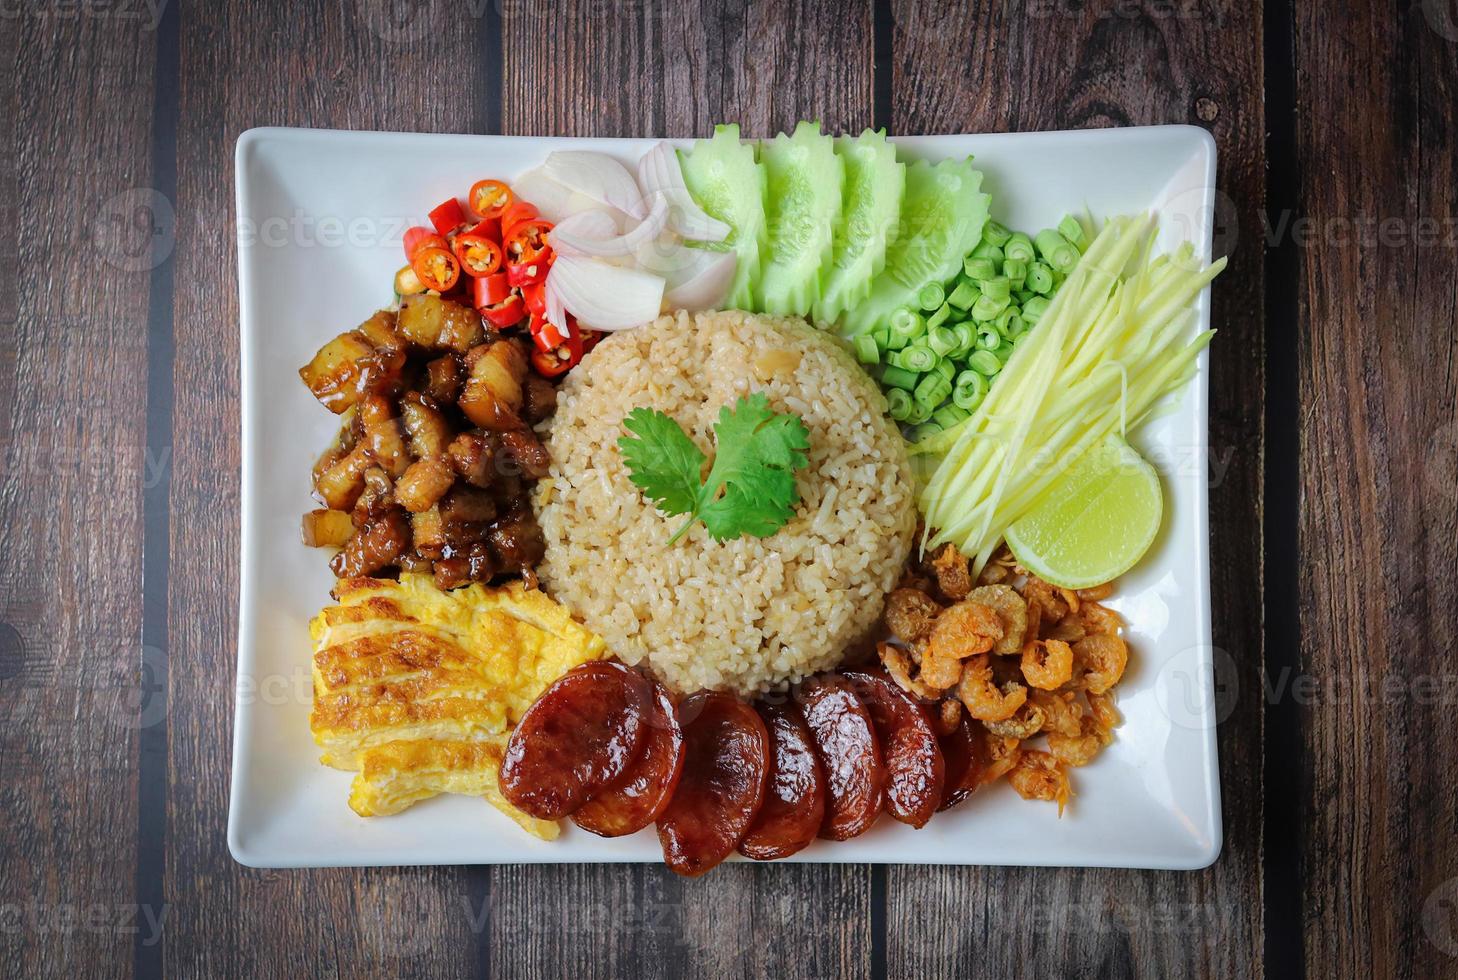 arroz temperado com pasta de camarão, com cebola roxa, feijão, manga e ovo frito na chapa branca na mesa de madeira foto